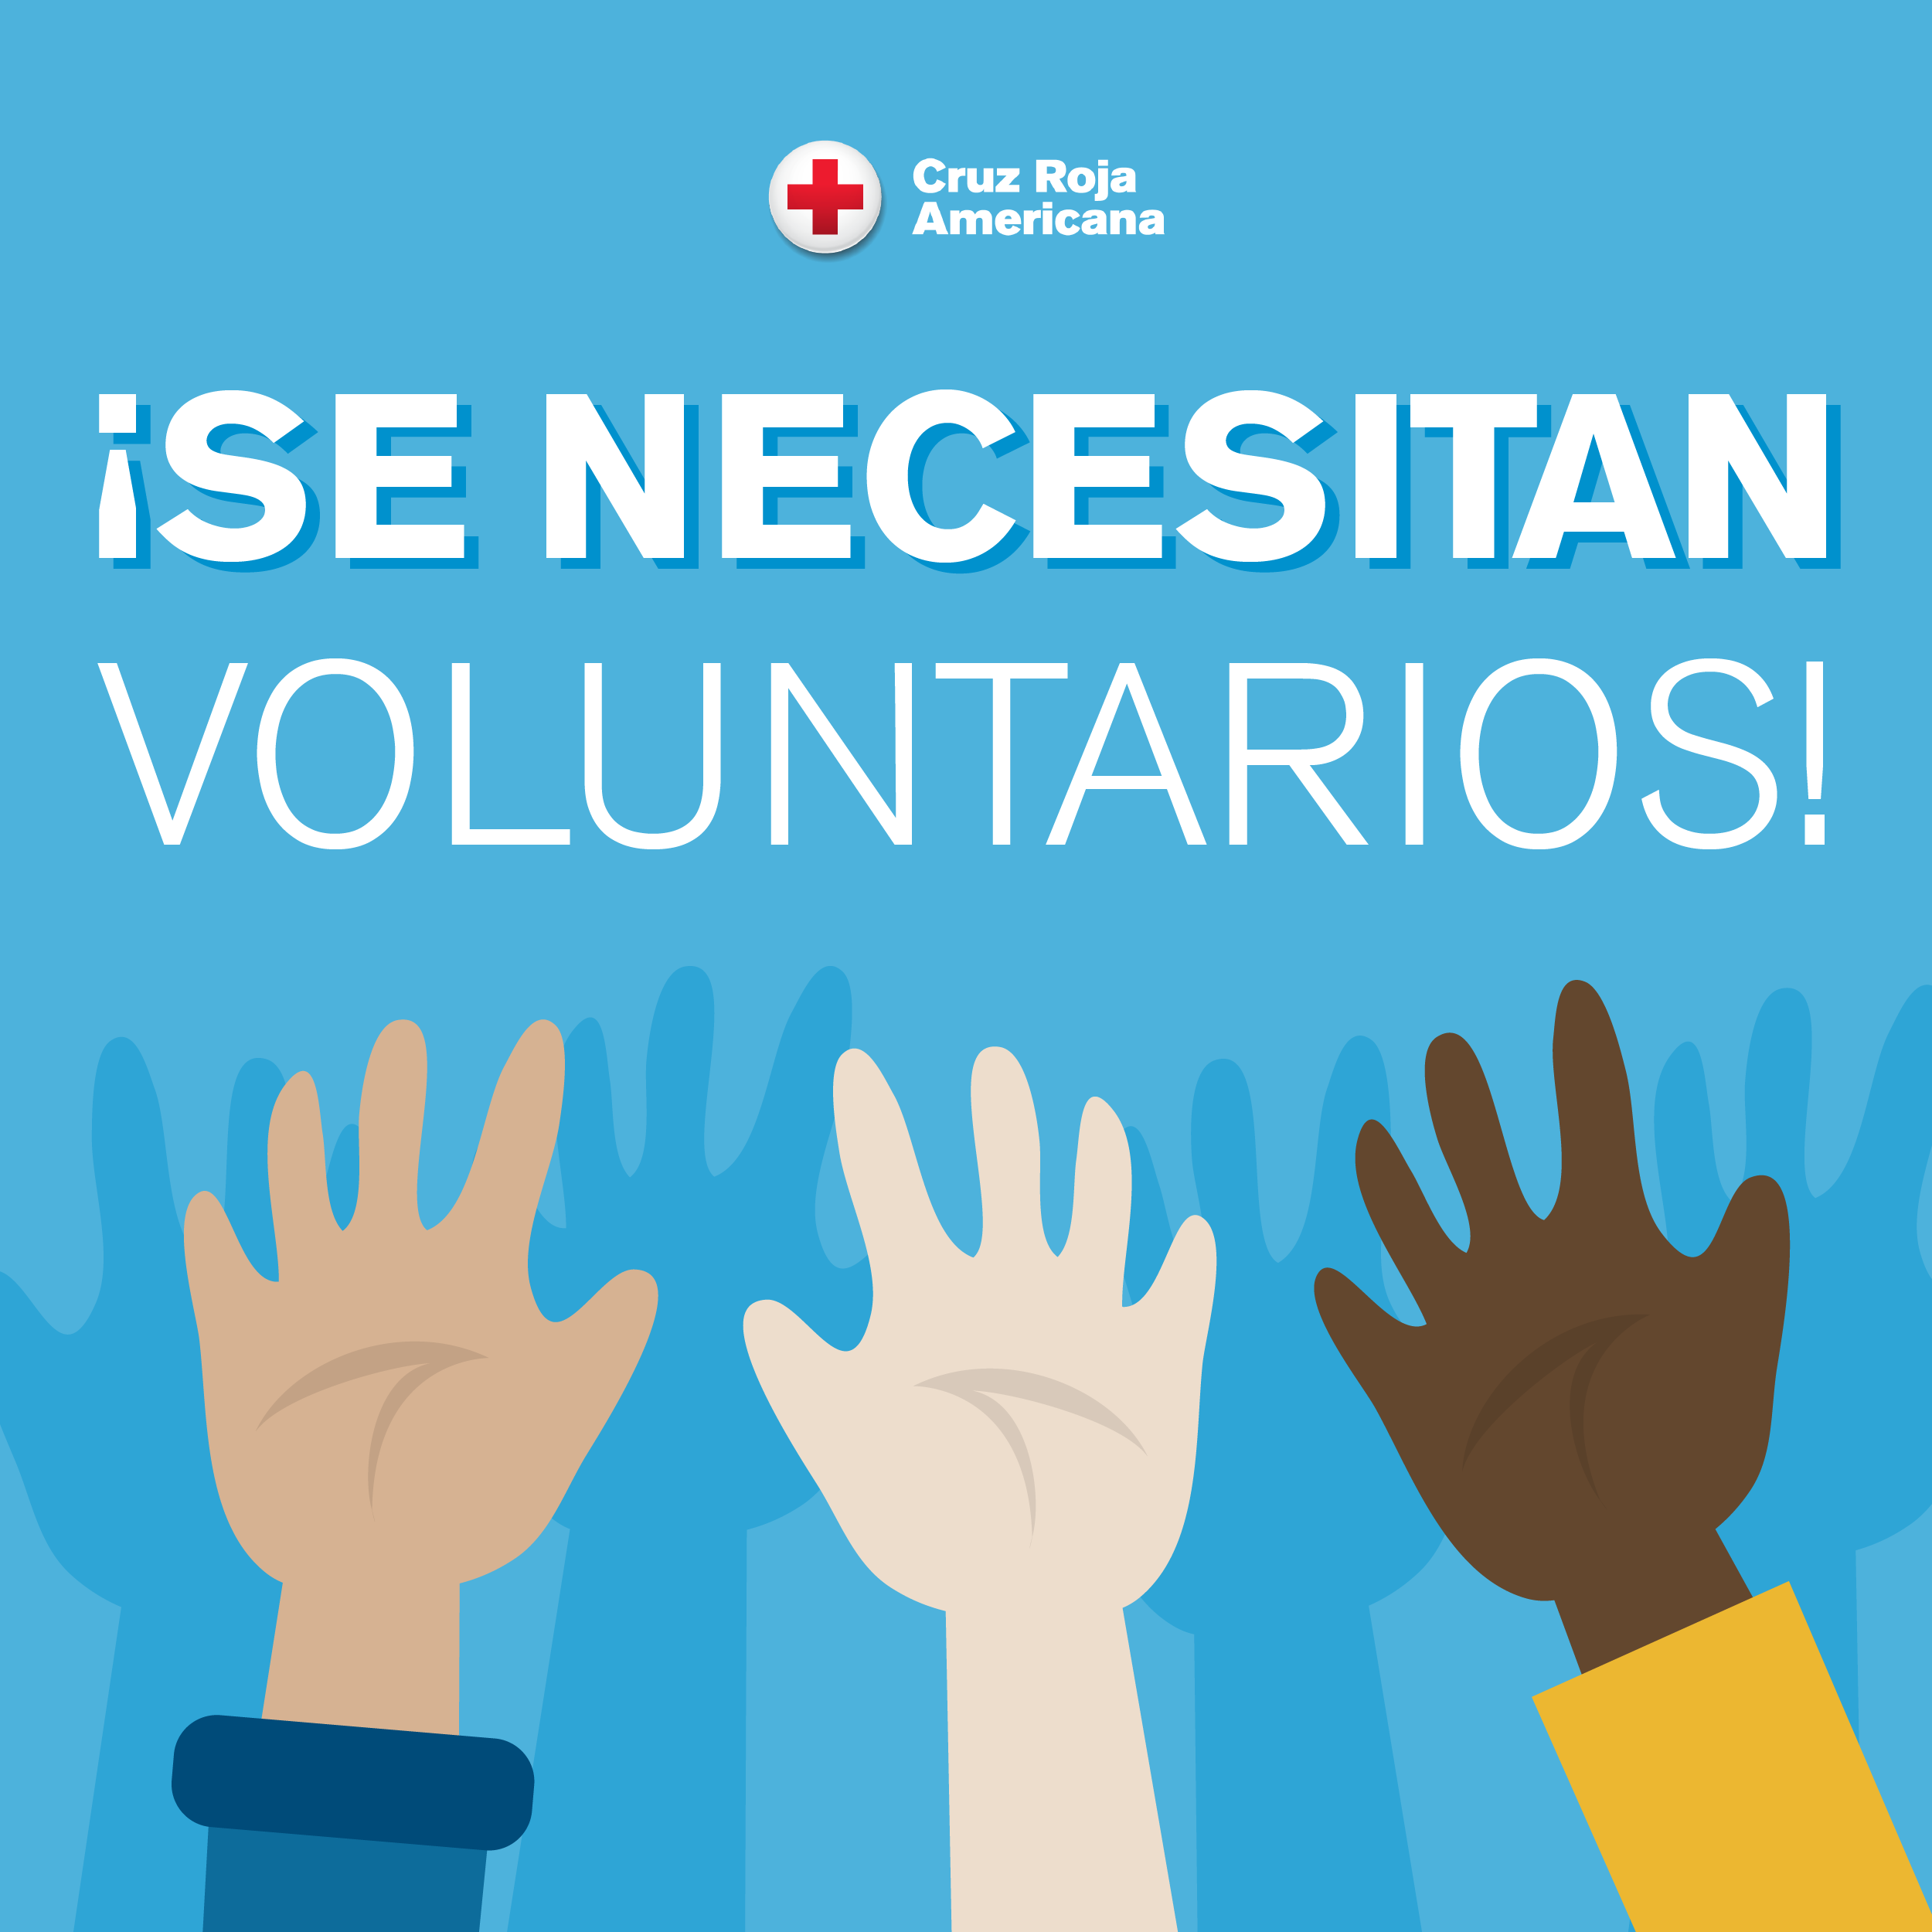 Hazte voluntario de la Cruz Roja y ayuda a los demás